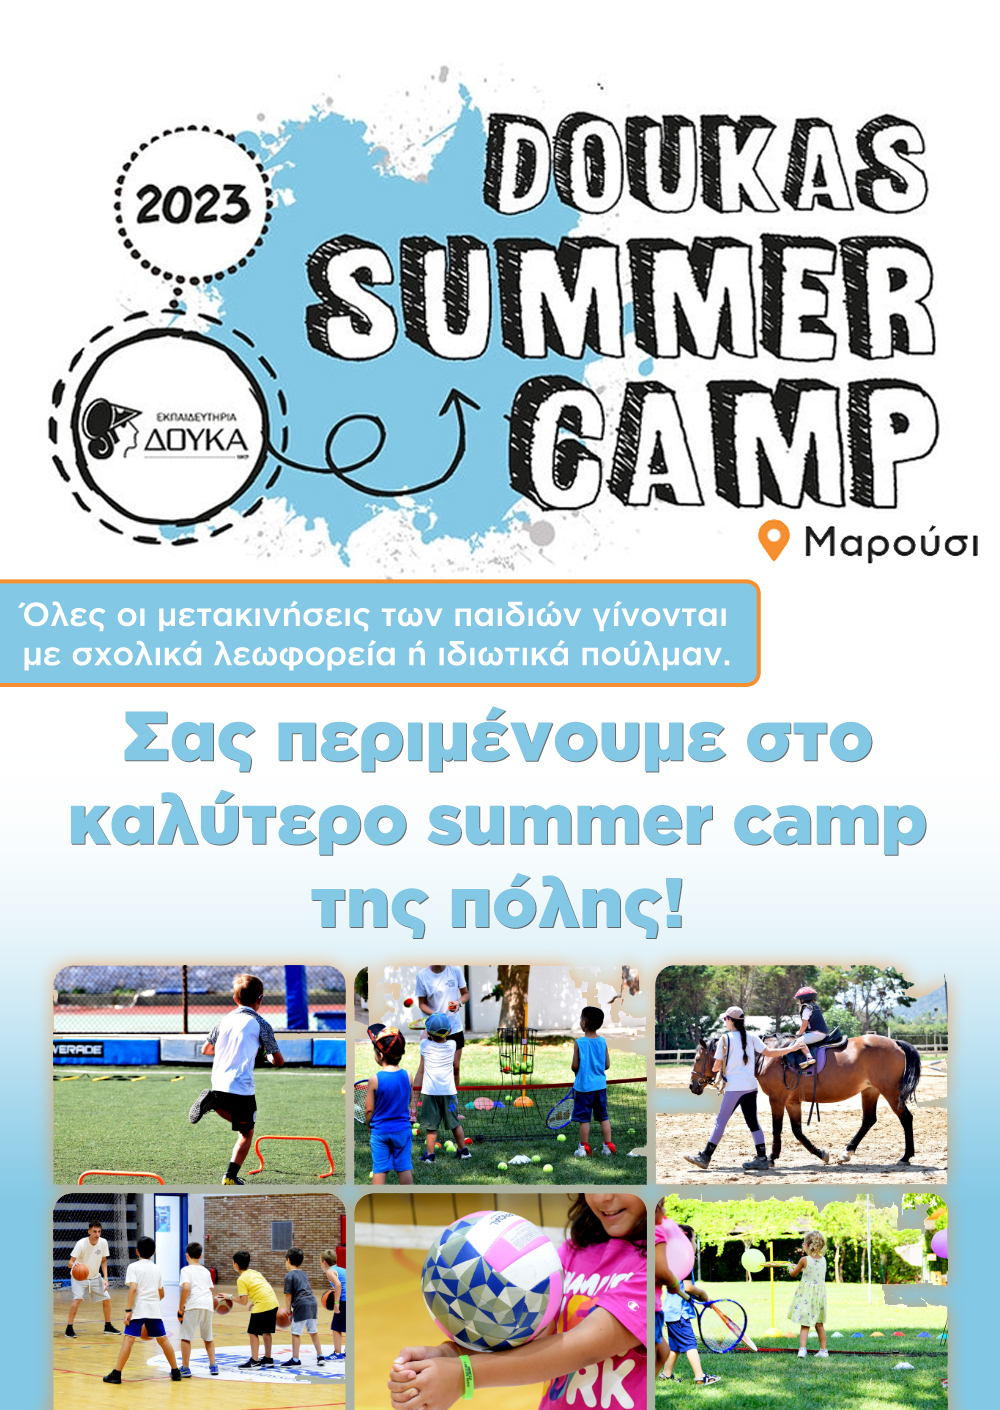 Doukas summer camp